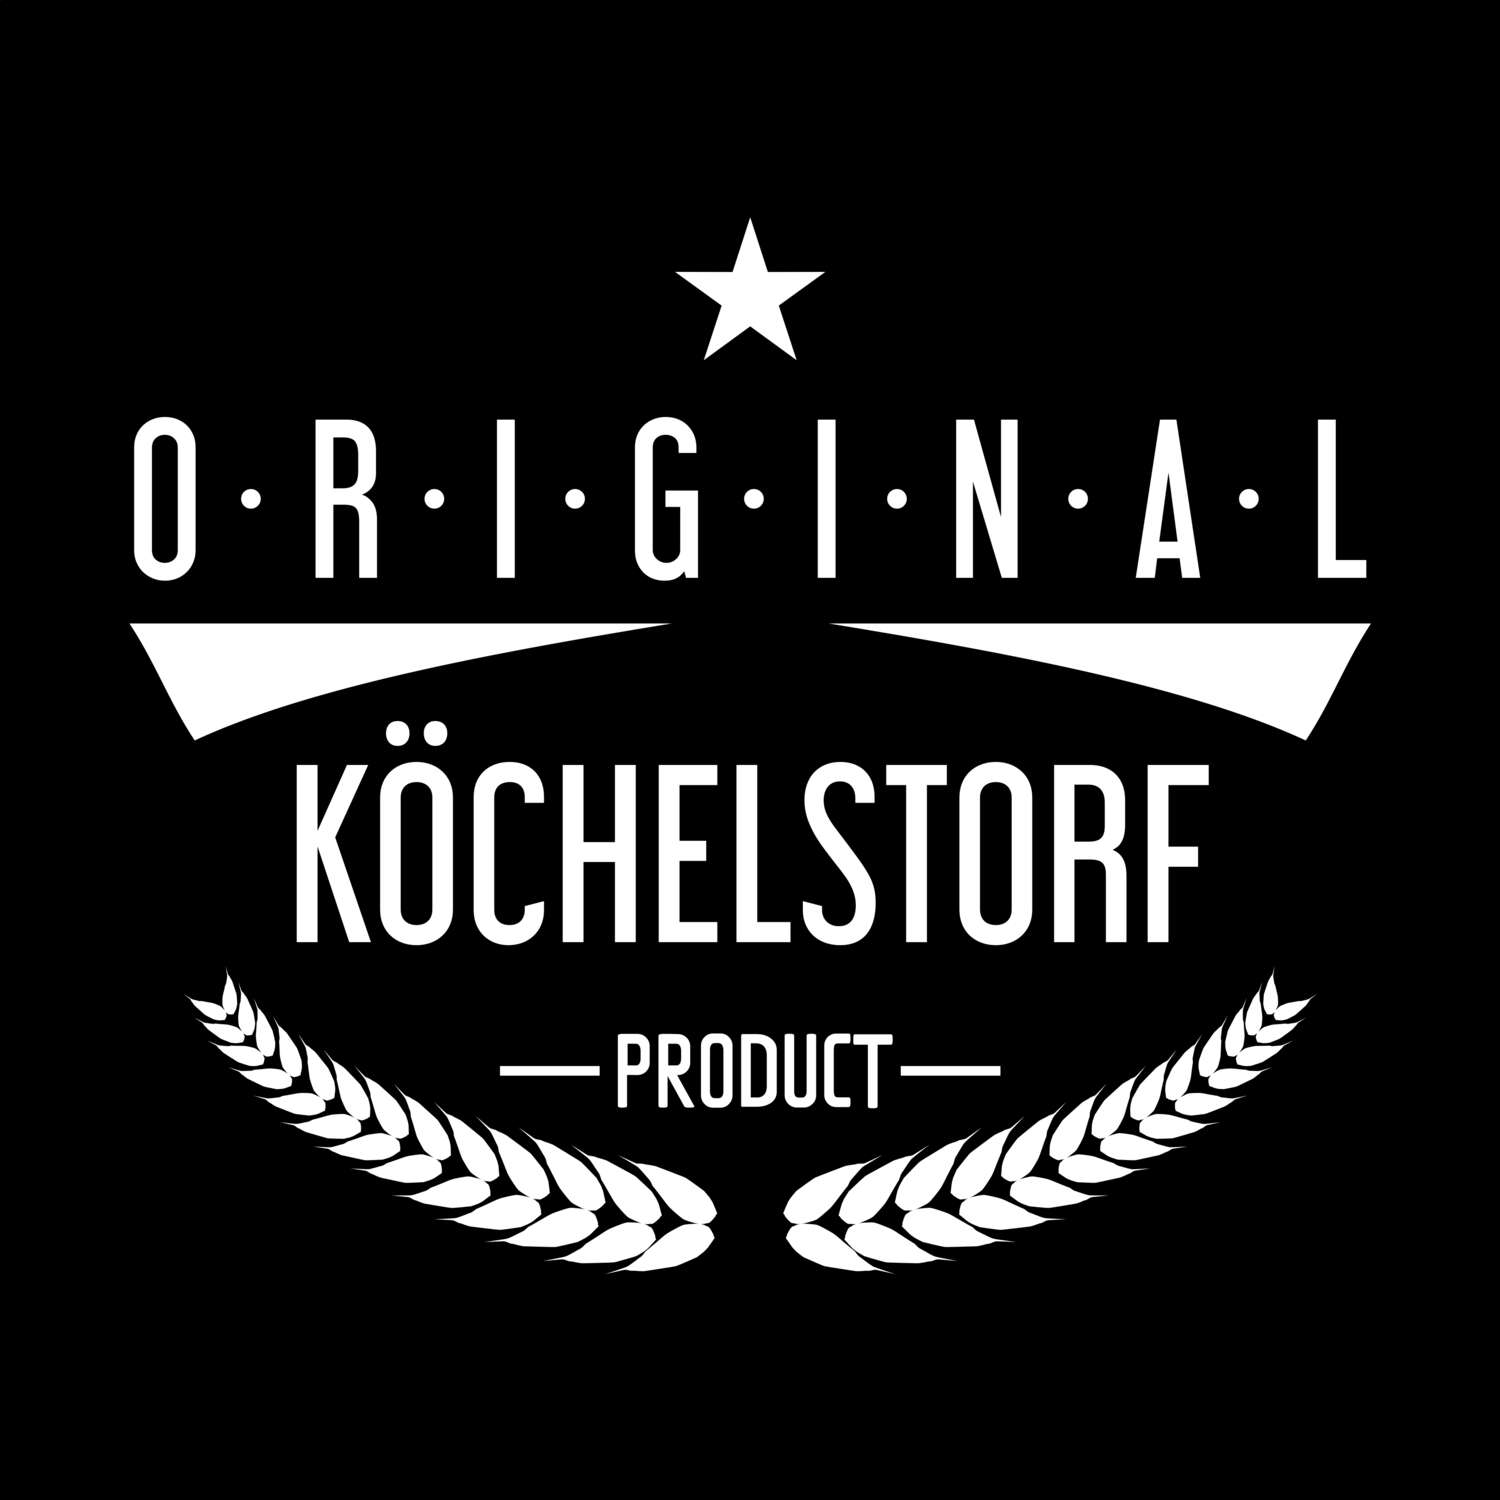 Köchelstorf T-Shirt »Original Product«